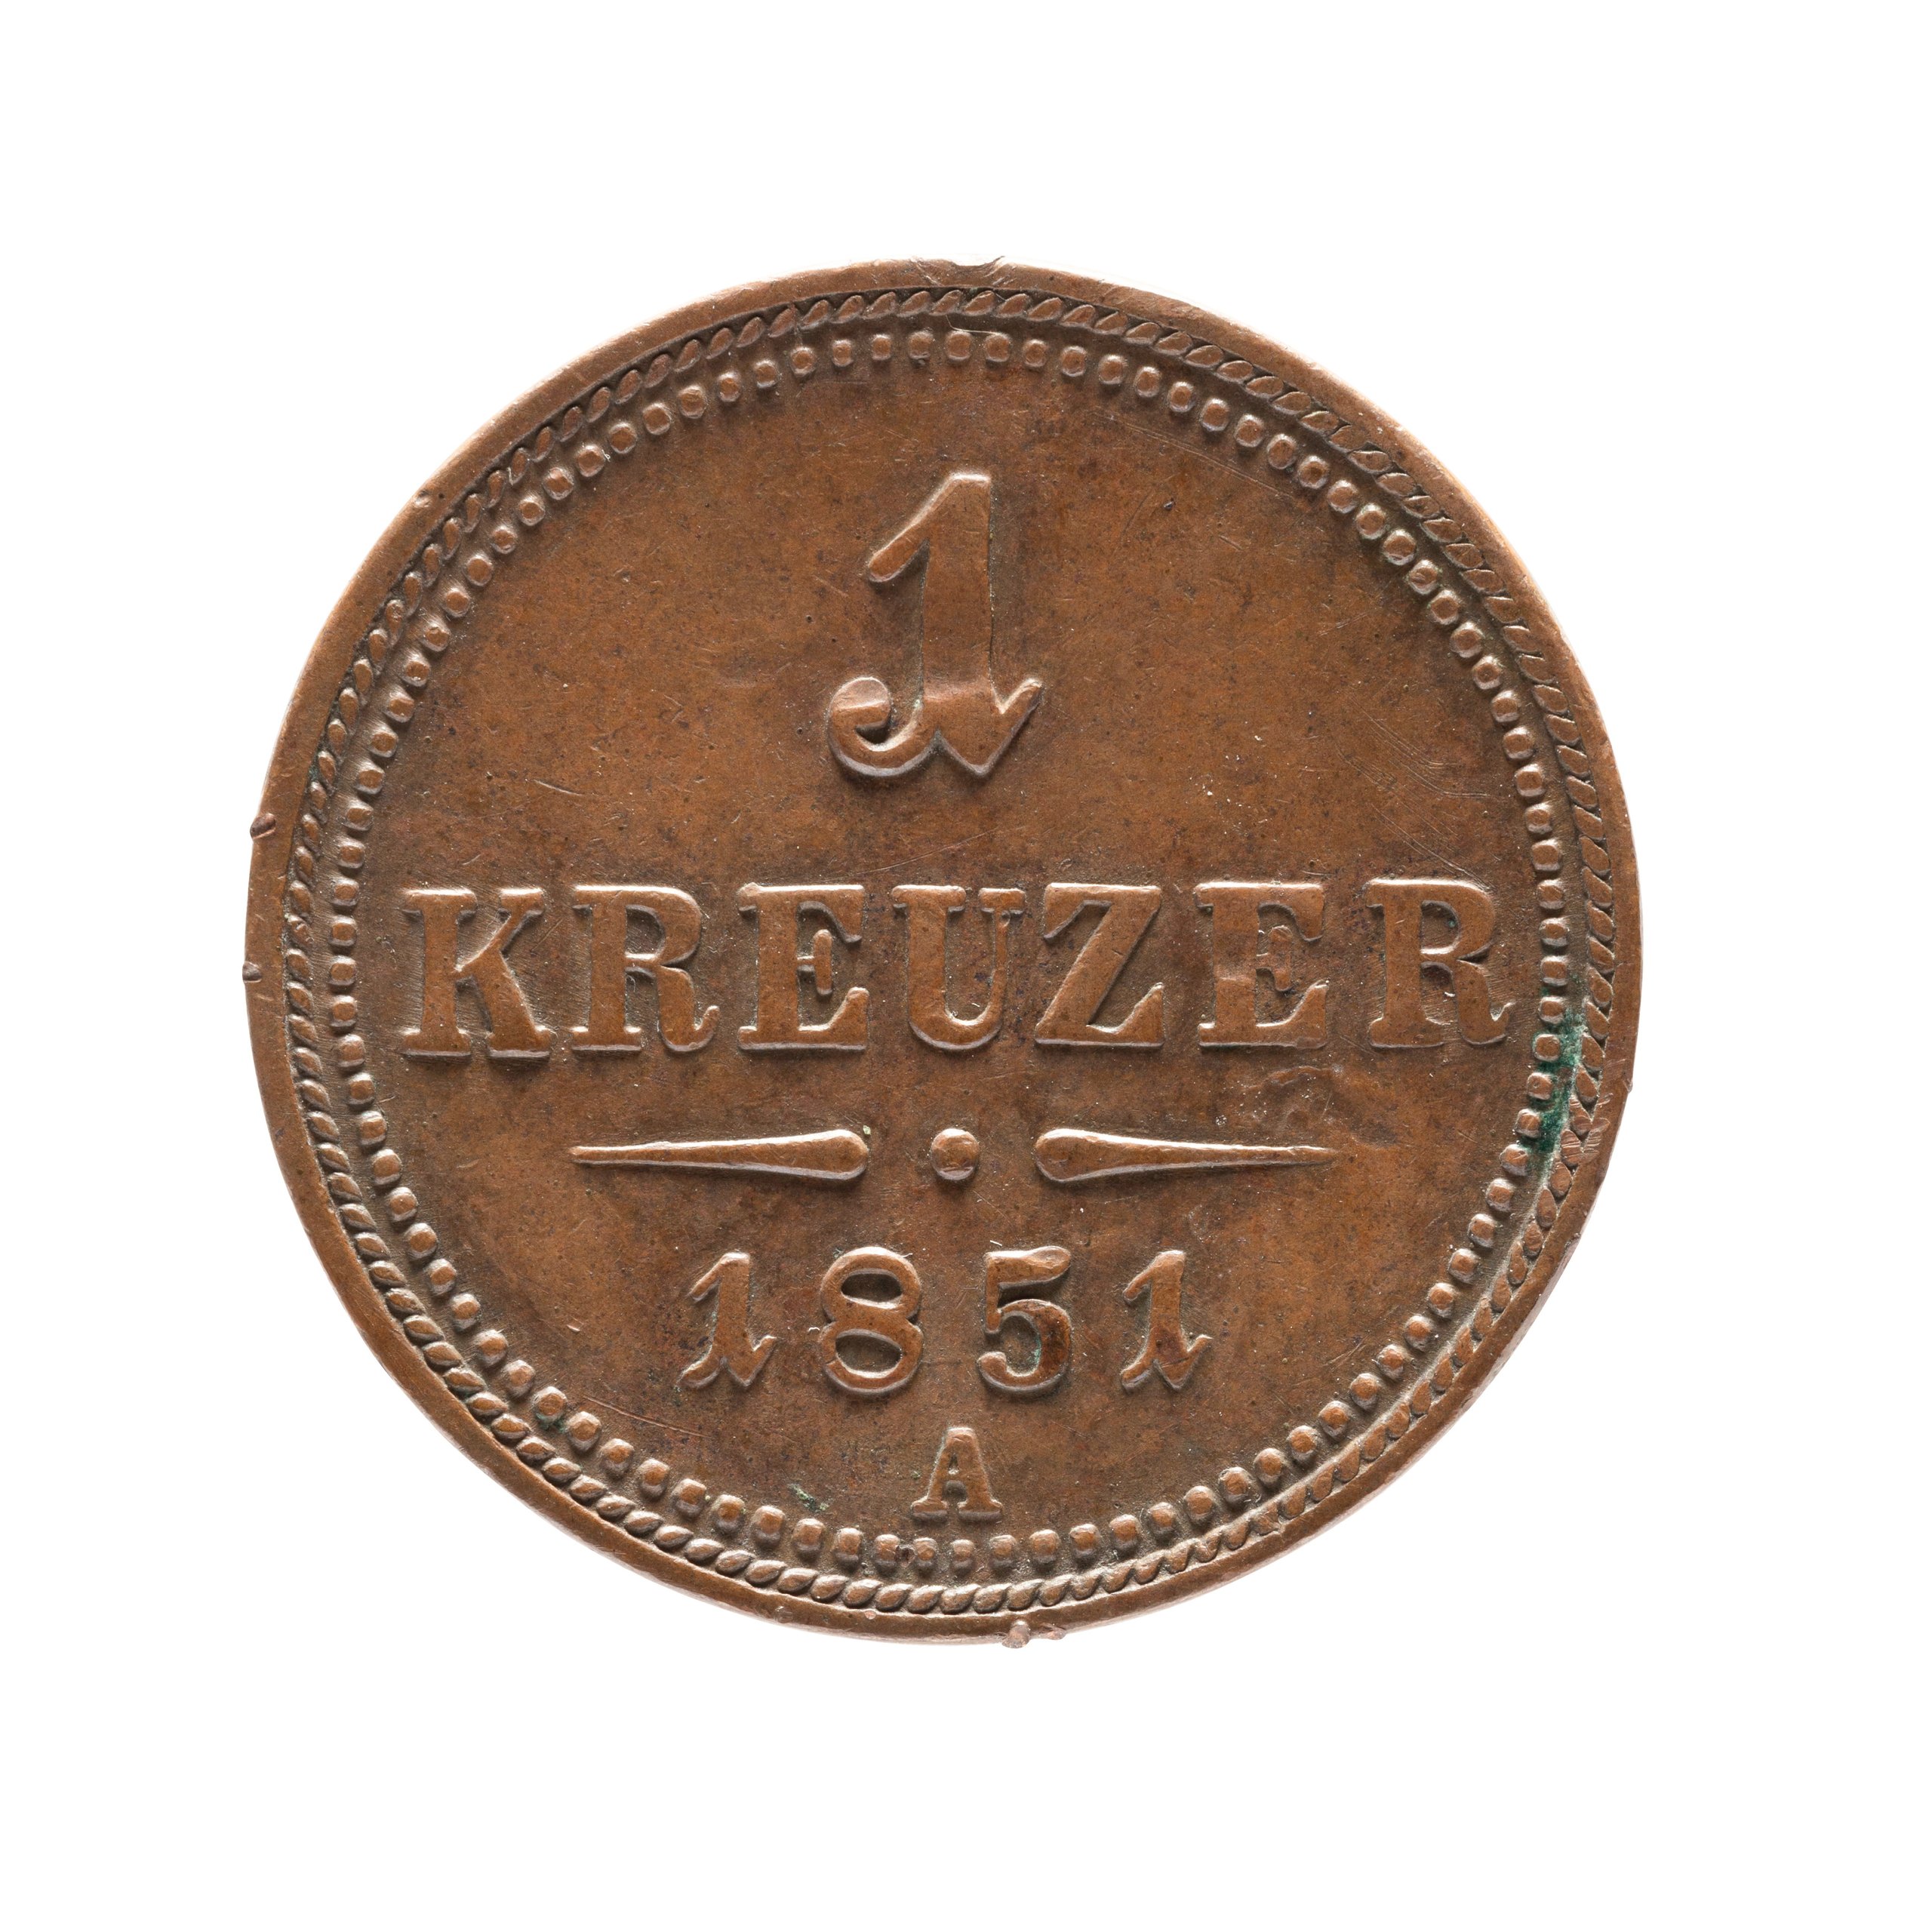 Austrian One Kreuzer coin